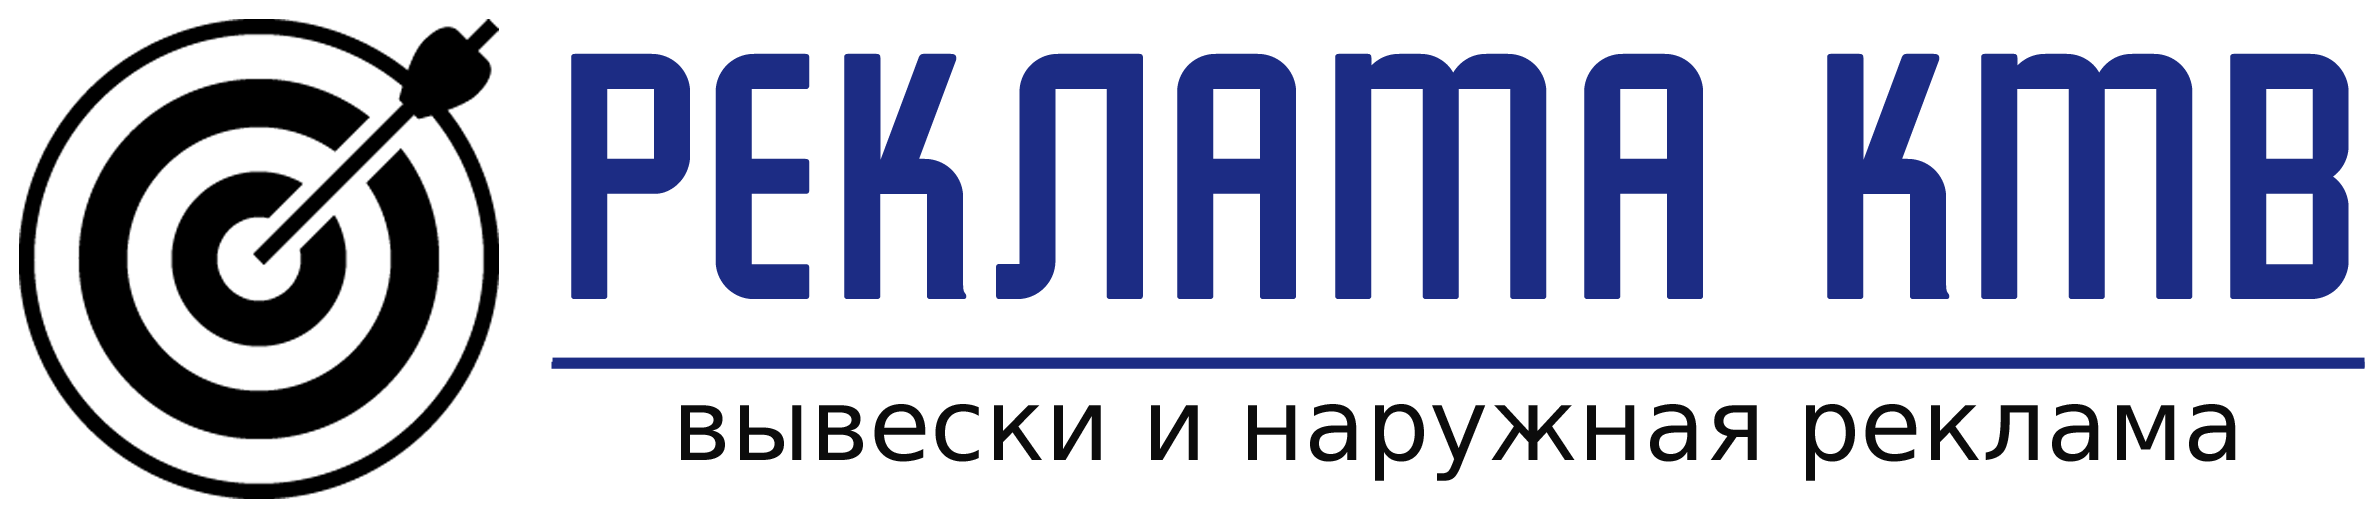 Наружная реклама, вывески, объемные буквы, световые короба в Пятигорске